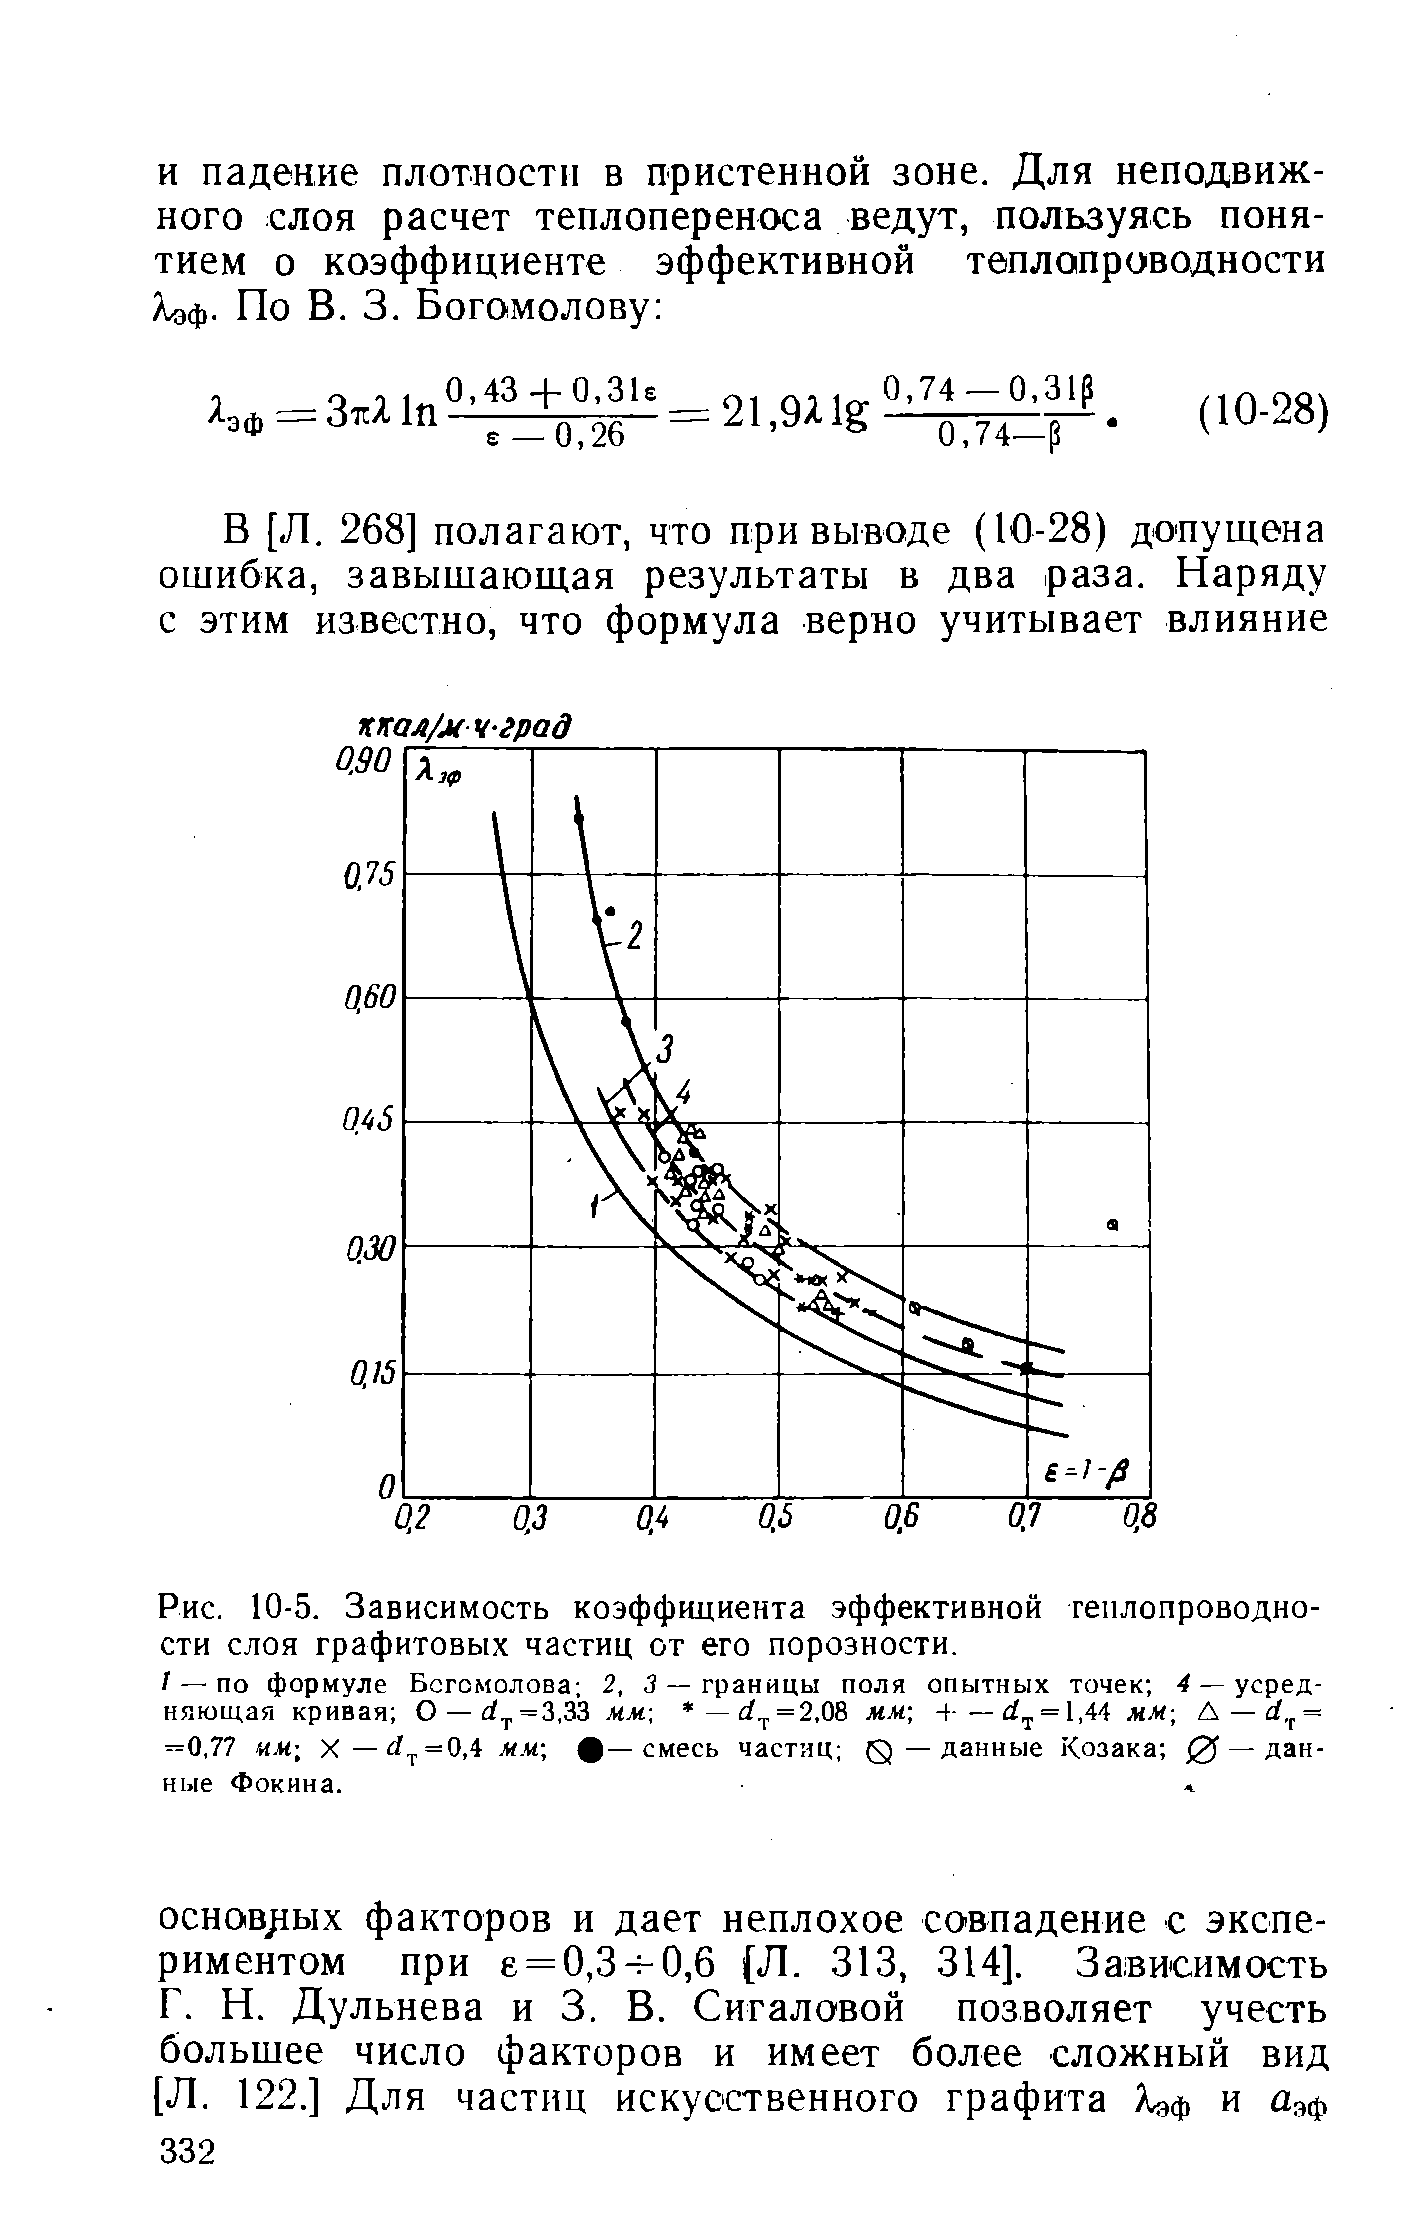 Рис. 10-5. Зависимость коэффидиента эффективной теплопроводности слоя графитовых частиц от его порозности.
